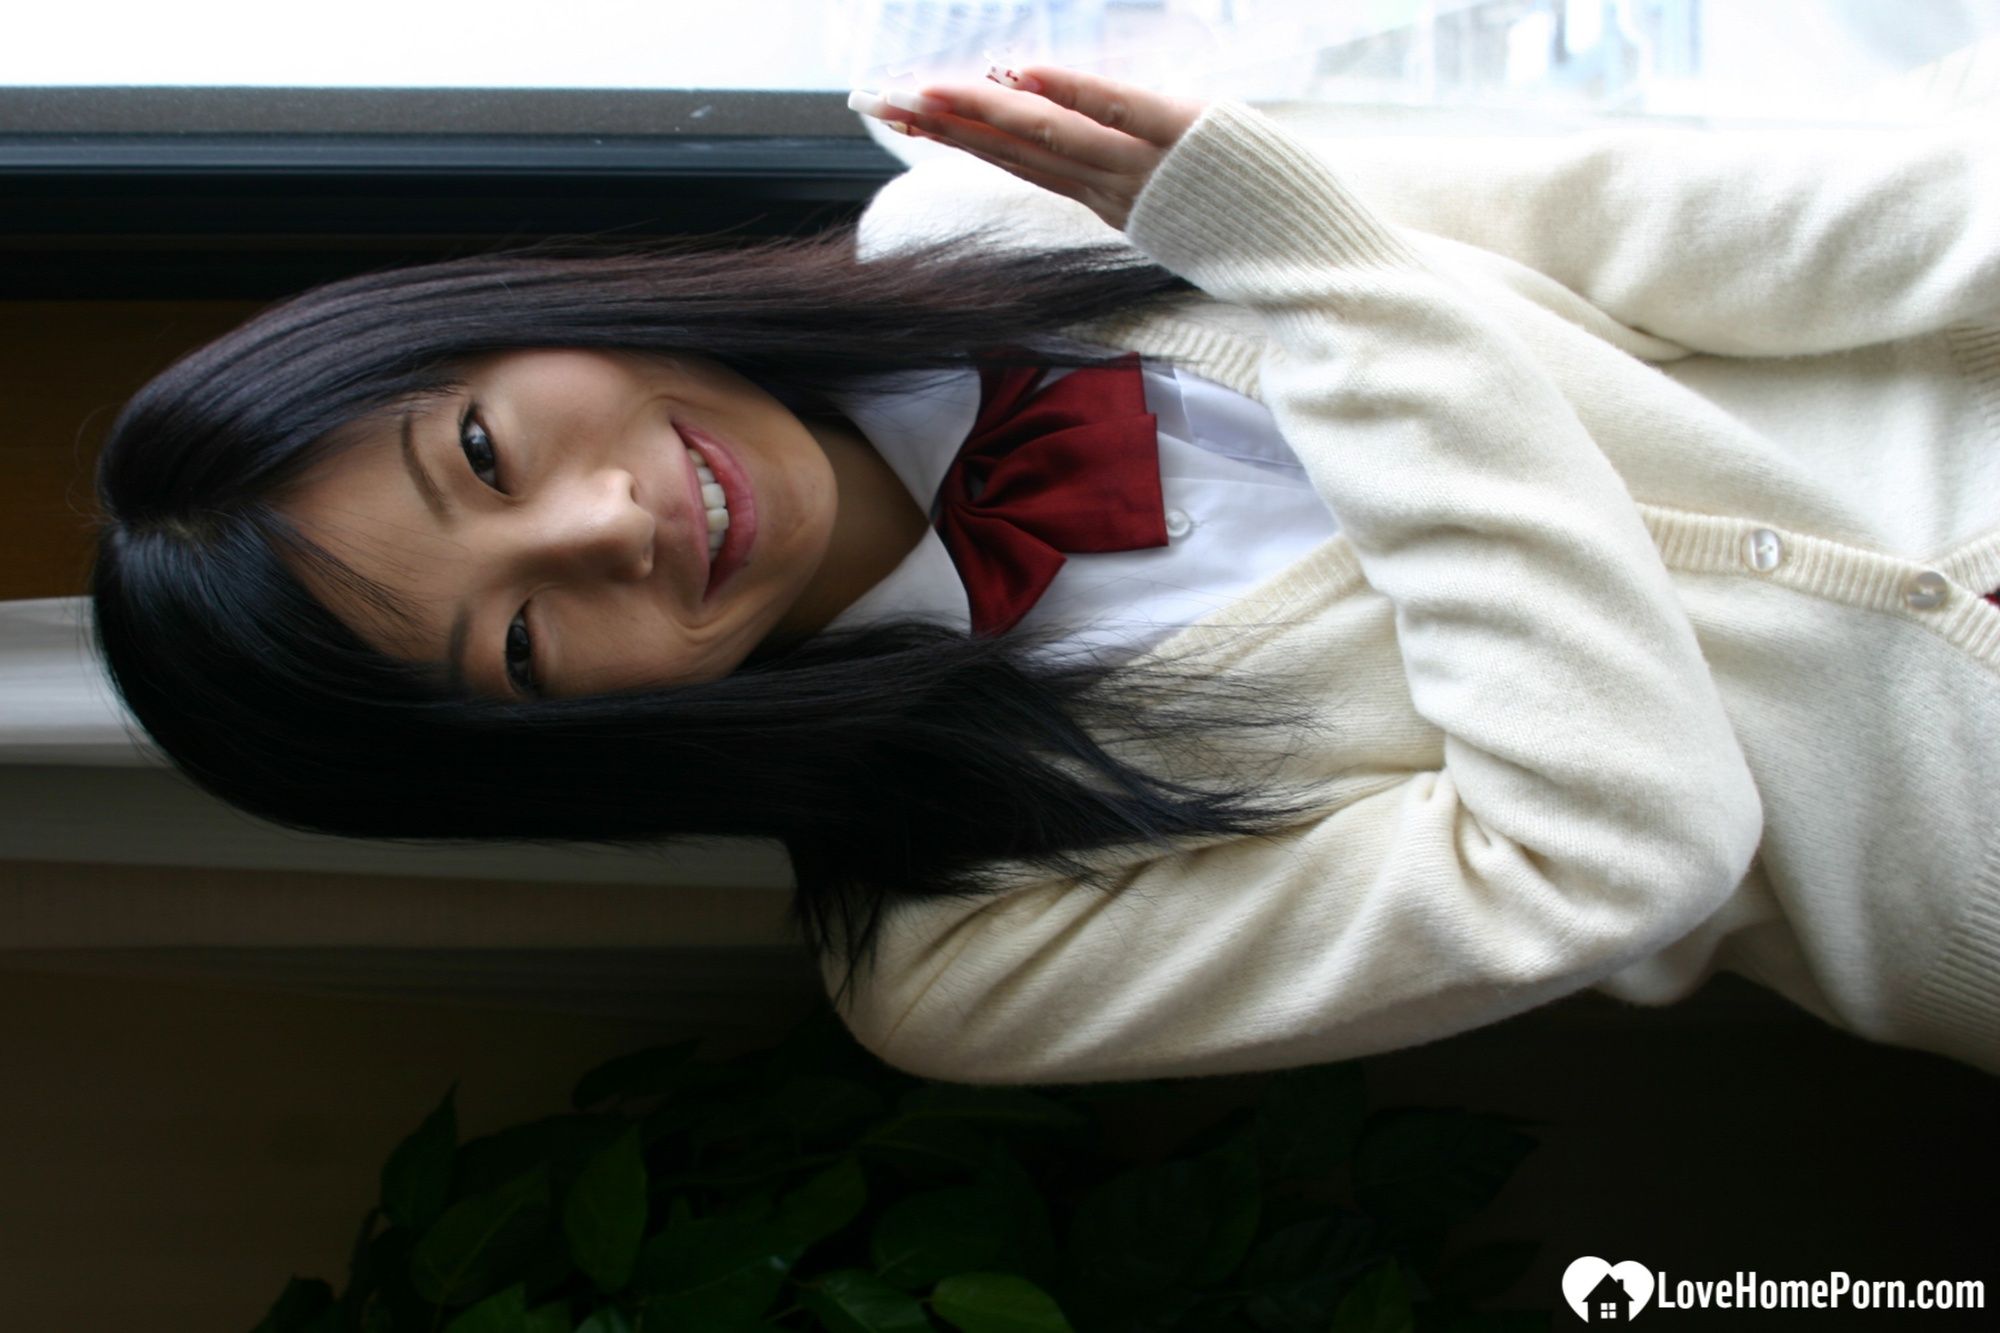 Asian schoolgirl looks for some online exposure #51